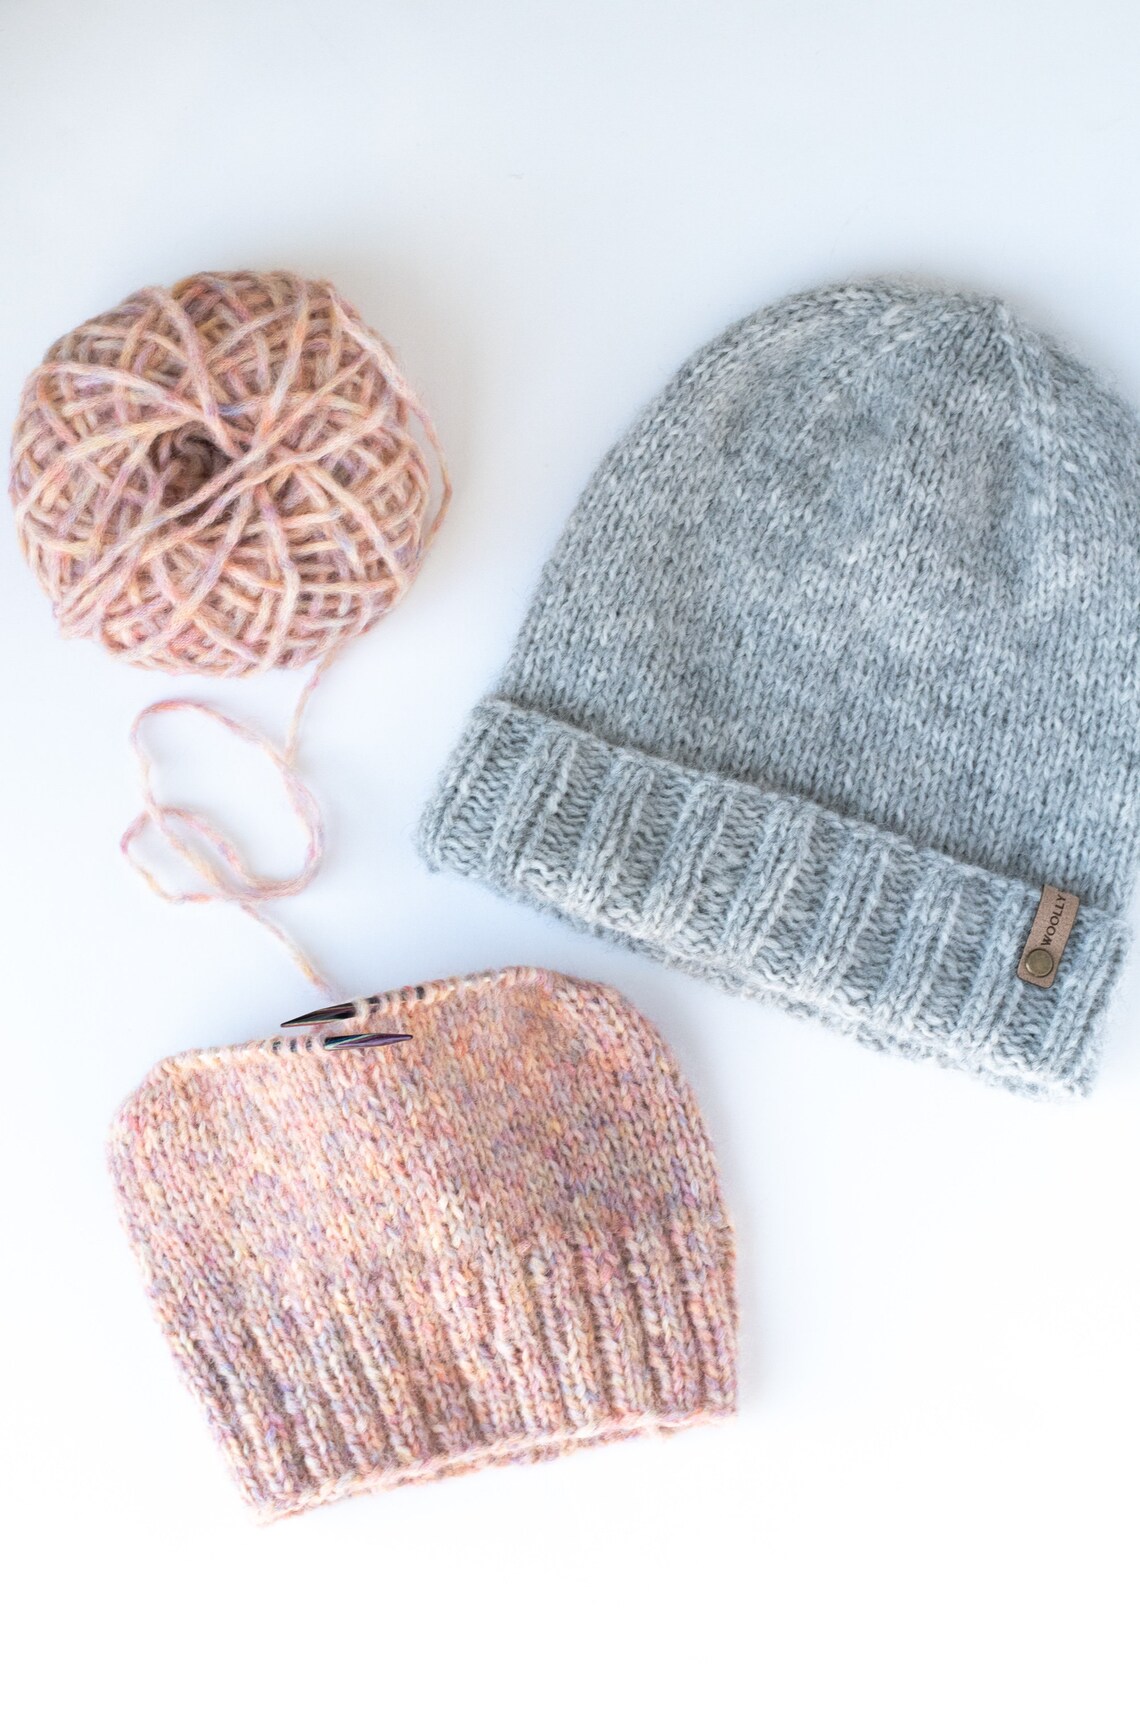 KNITTING PATTERN: Birchwood Beanie Easy Knit Hat Pattern | Etsy